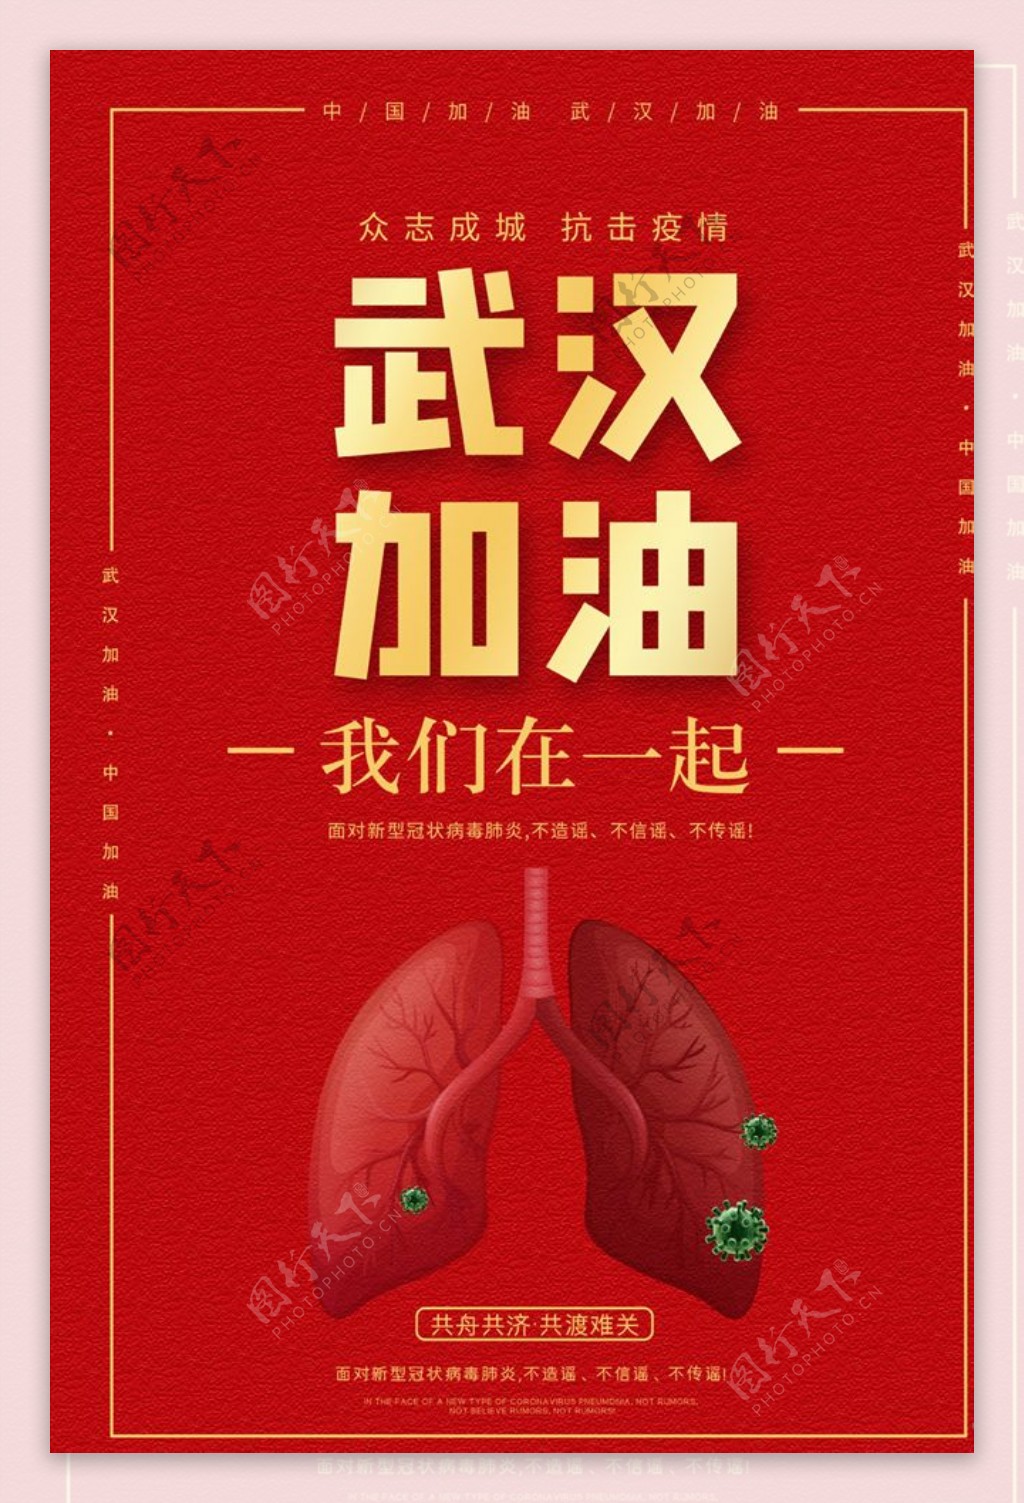 新型冠状病毒肺炎武汉加油海报